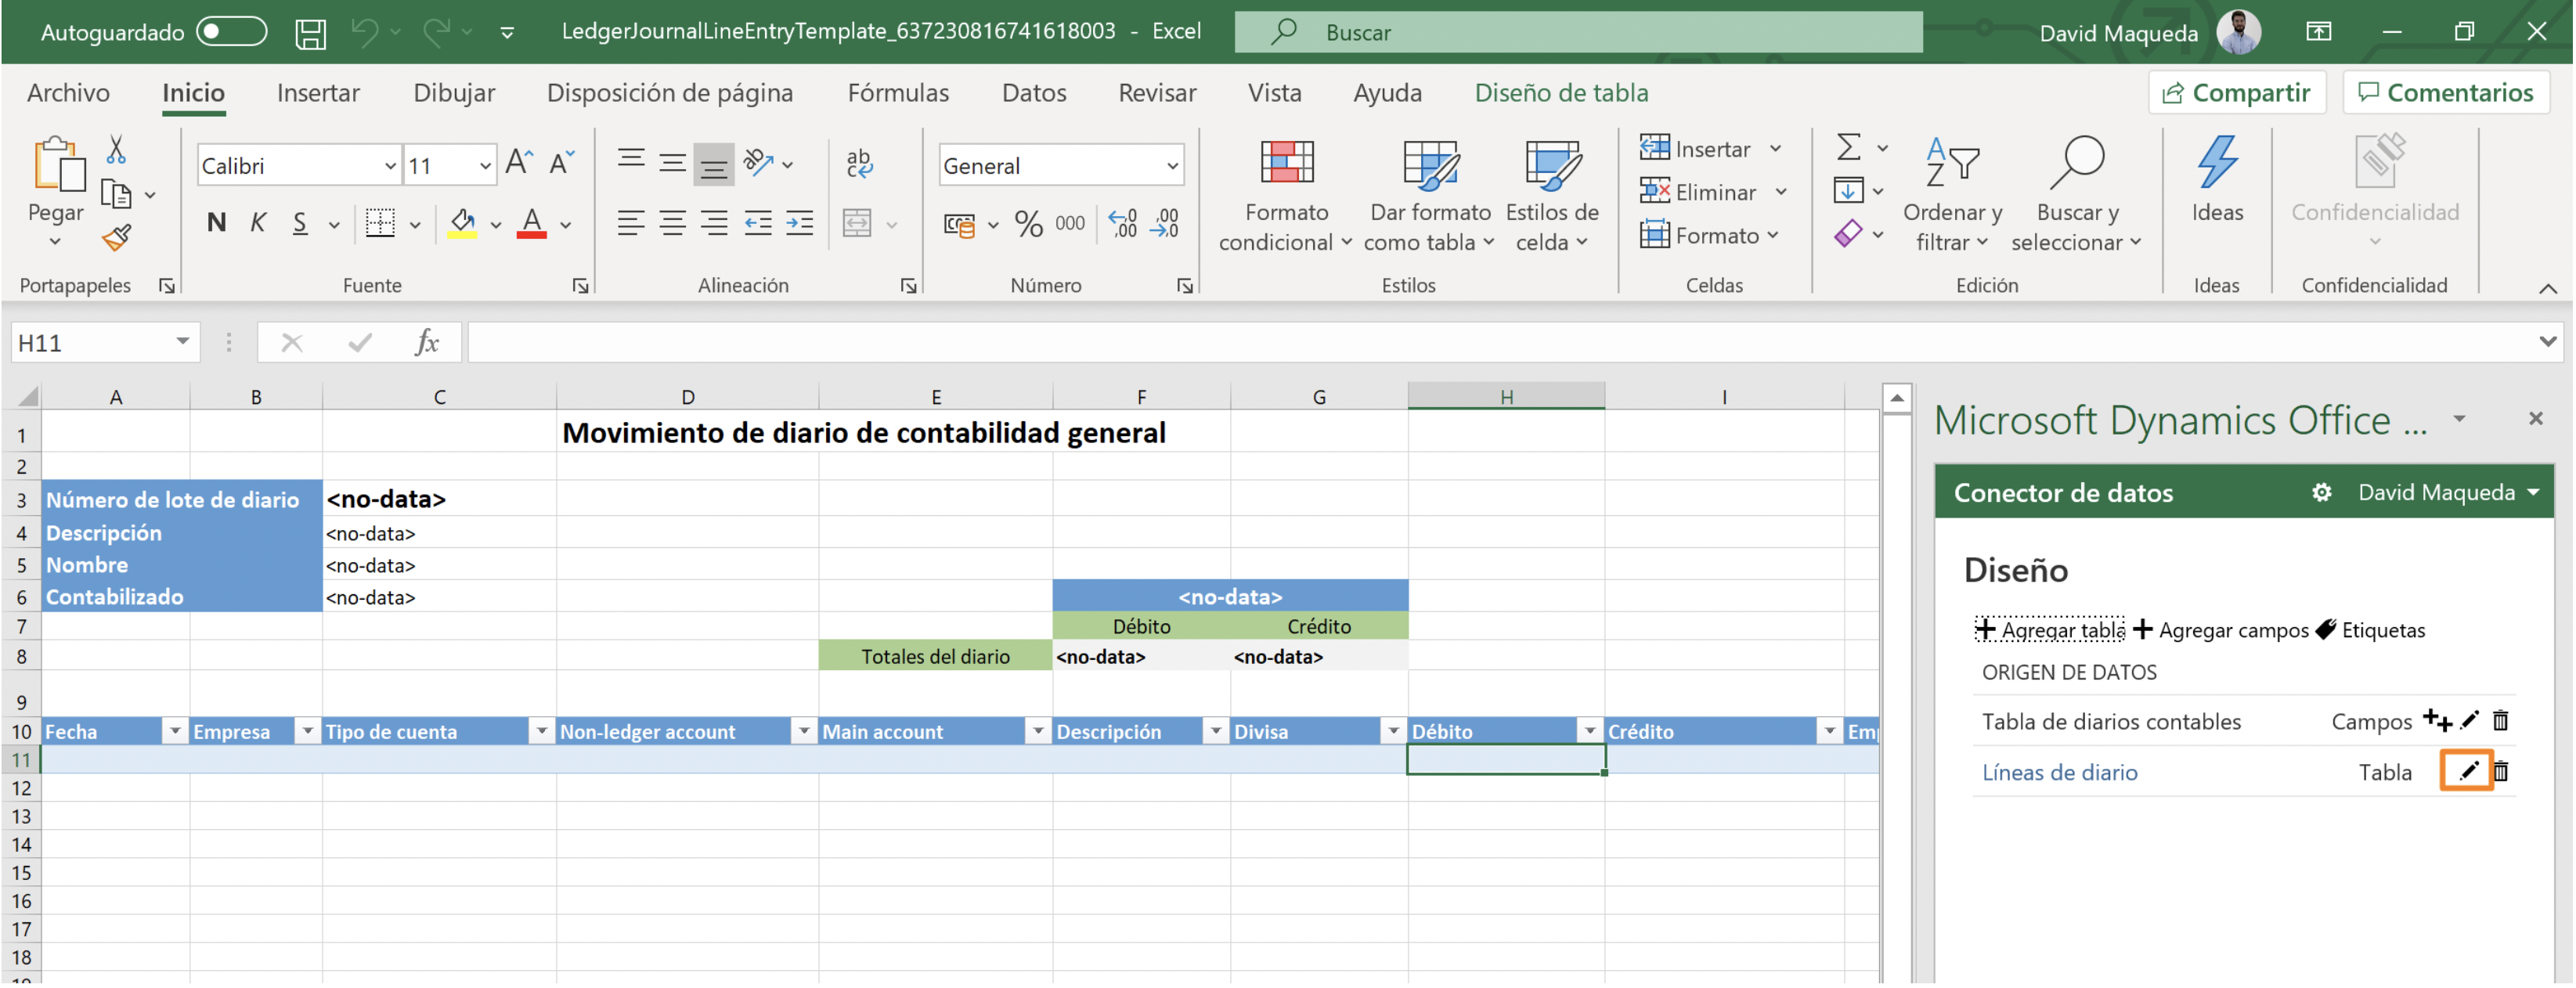 Editar plantillas de Excel para añadir Dimensiones financieras en MSDyn365FO Axazure